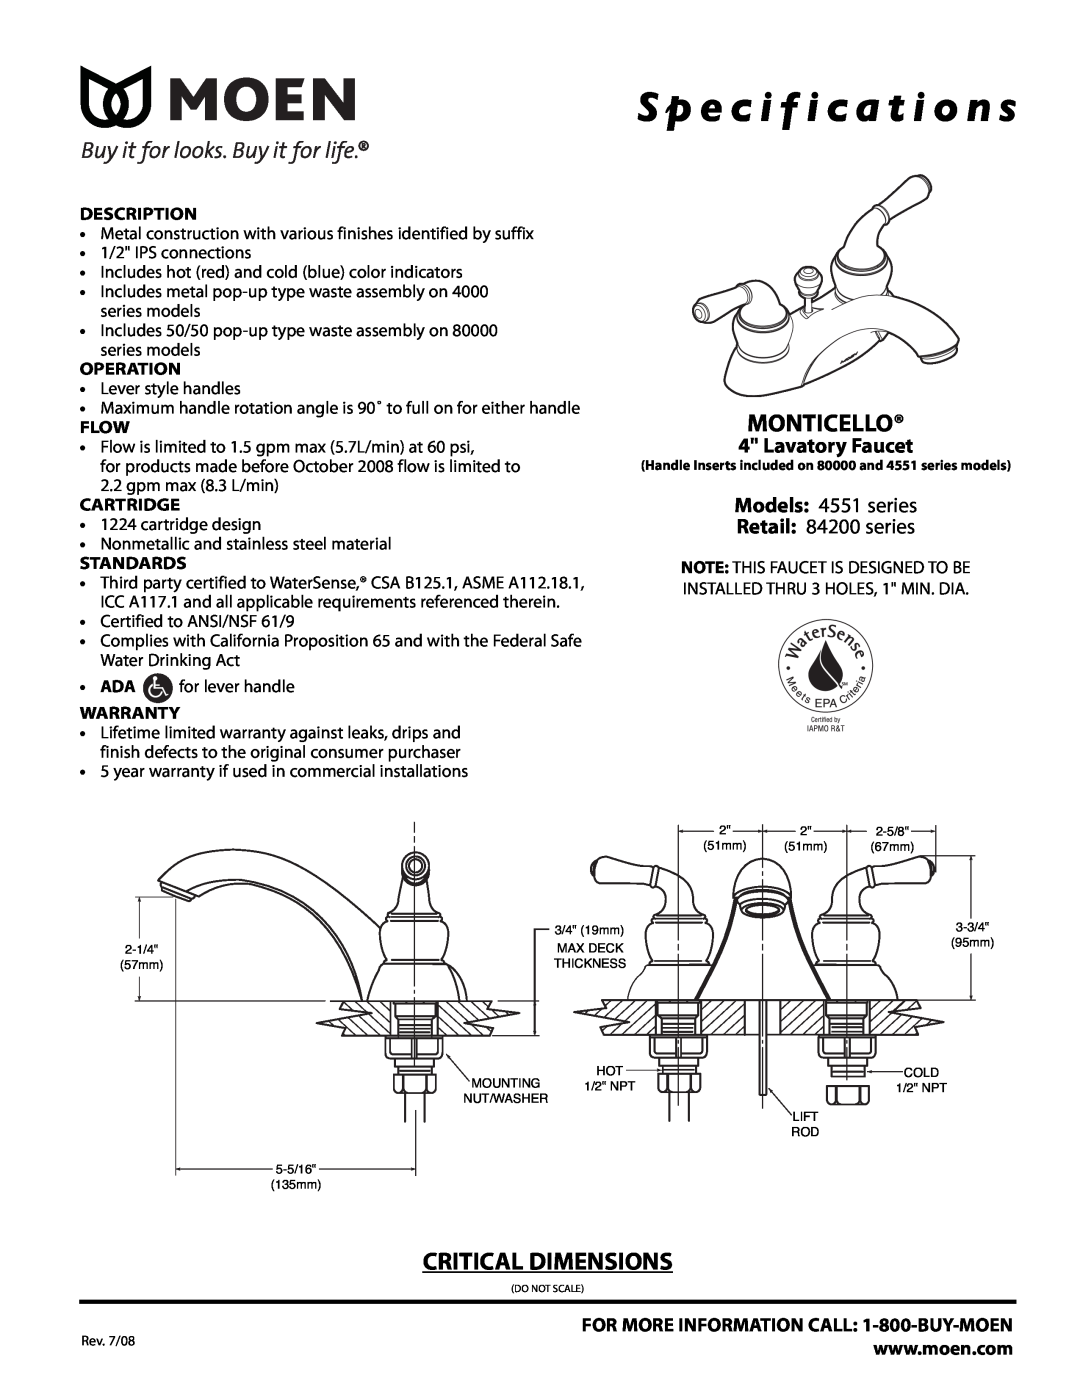 Moen 4551 Series specifications S p e c i f i c a t i o n s, Monticello, Critical Dimensions, Lavatory Faucet, Description 